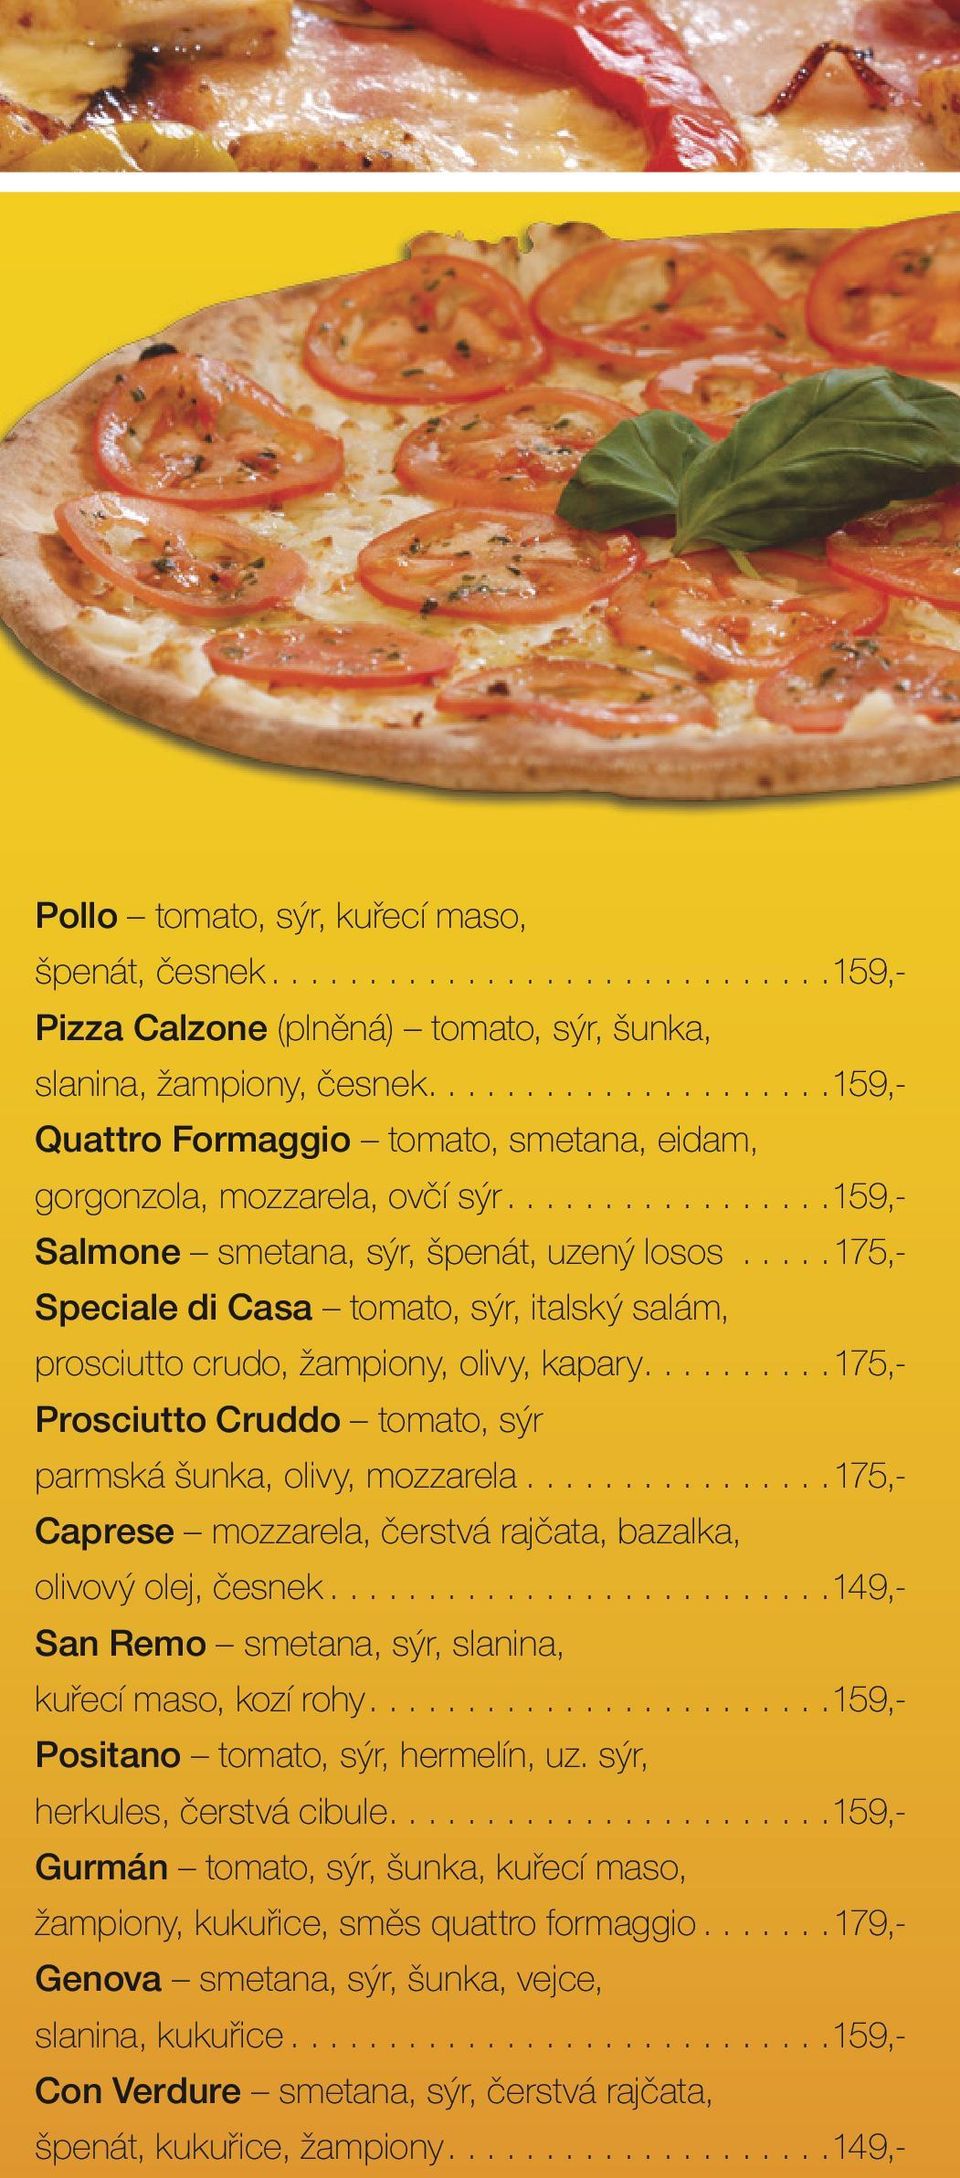 ..175,- Speciale di Casa tomato, sýr, italský salám, prosciutto crudo, žampiony, olivy, kapary...175,- Prosciutto Cruddo tomato, sýr parmská šunka, olivy, mozzarela.